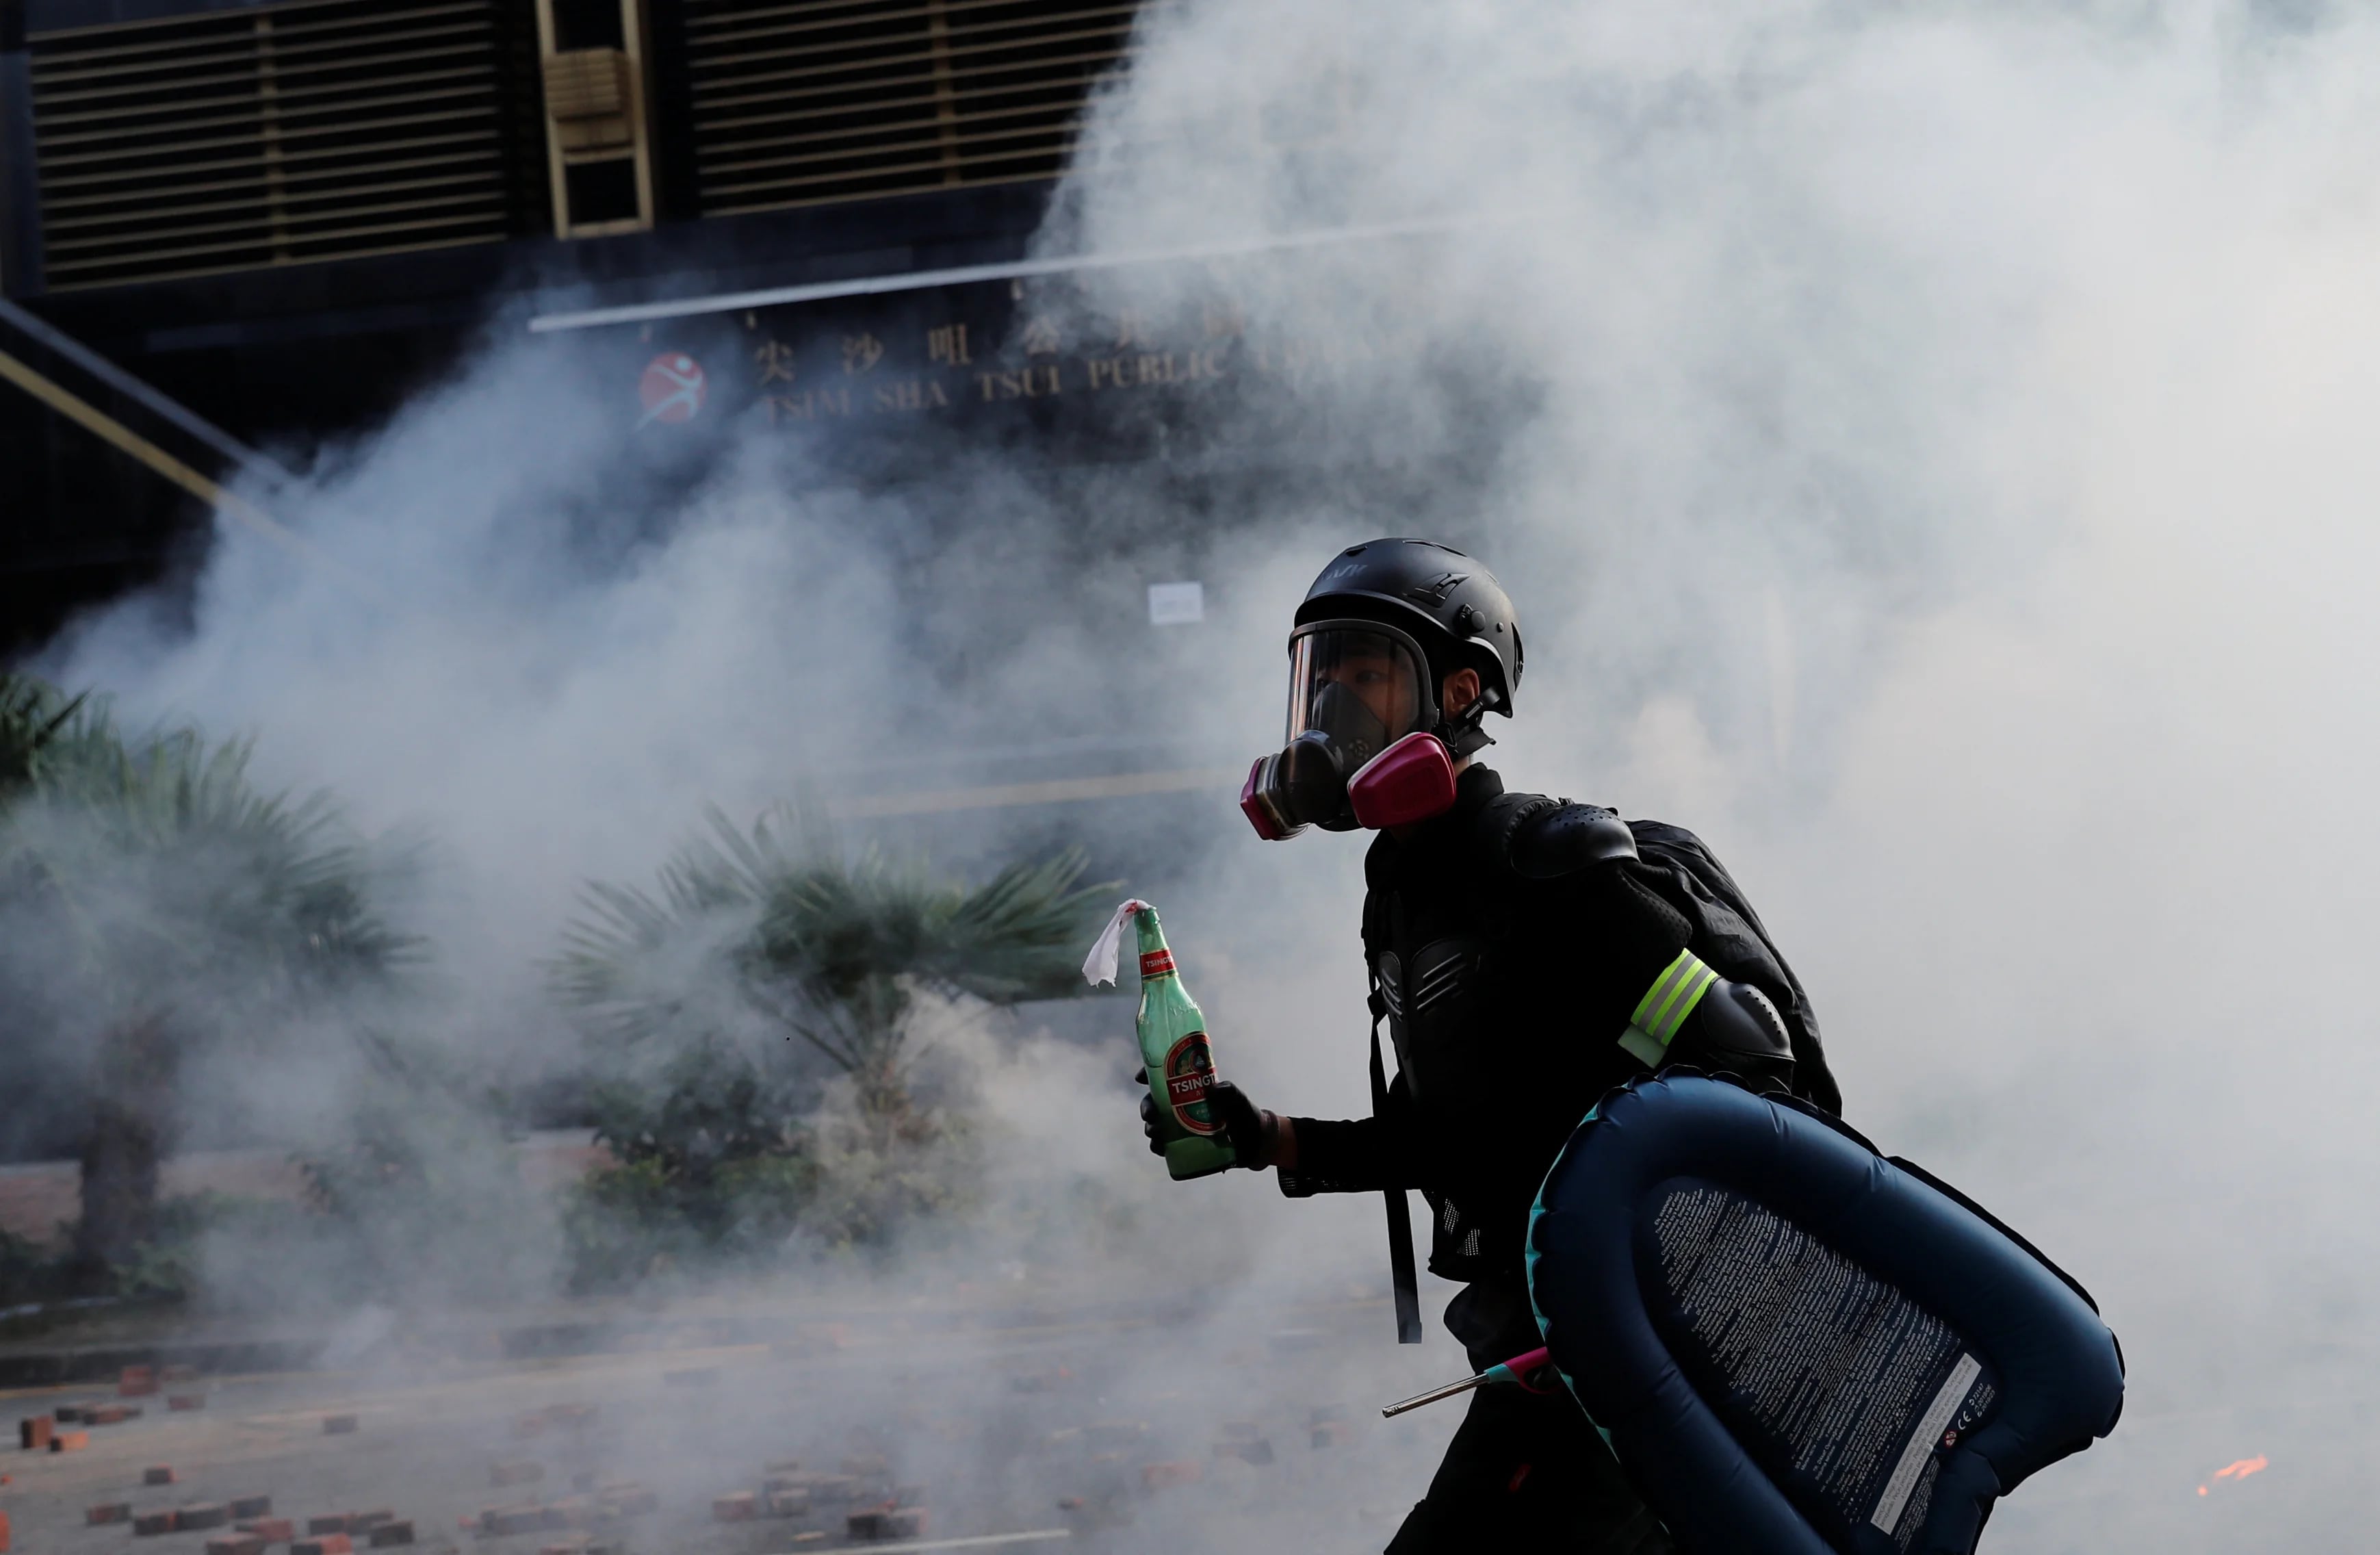 La policía reprimió a los manifestantes con gases lacrimógenos, porras extensibles y martillos, mientras estos se defendían lanzando cascotes, botellas llenas de gasolina (REUTERS)